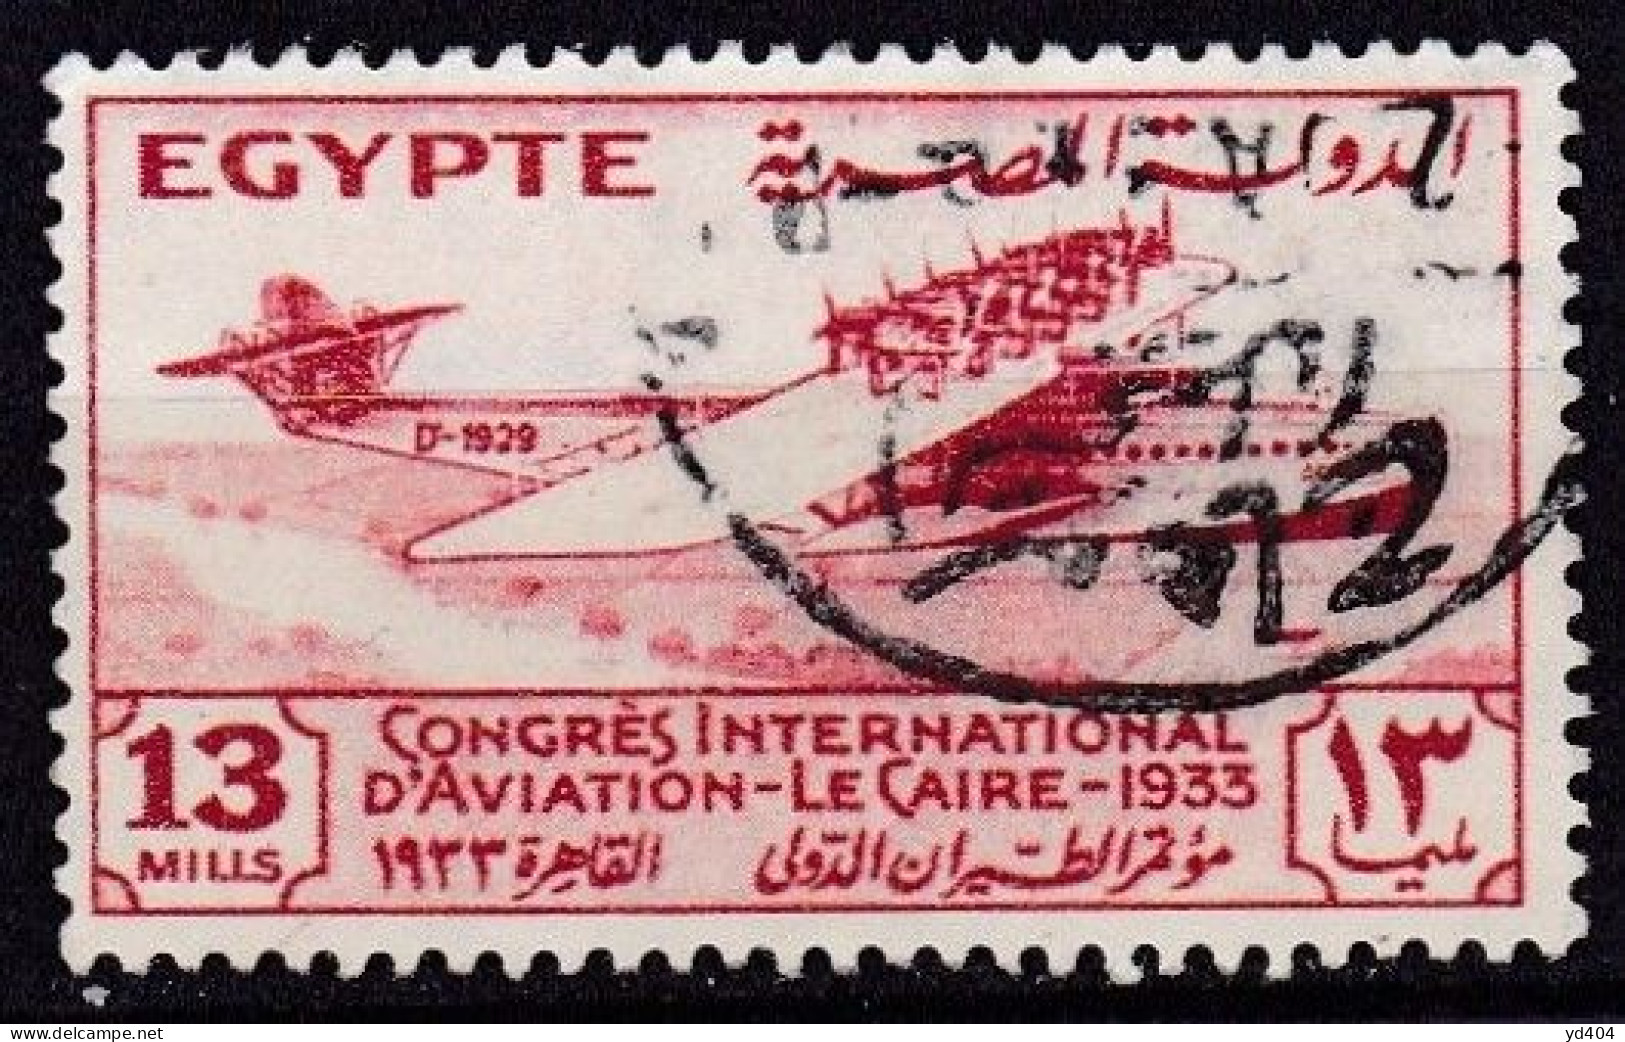 EG070C – EGYPTE – EGYPT – 1933 – INTERNATIONAL AVIATION CONGRESS – SG # 216 - USED 25 € - Gebruikt